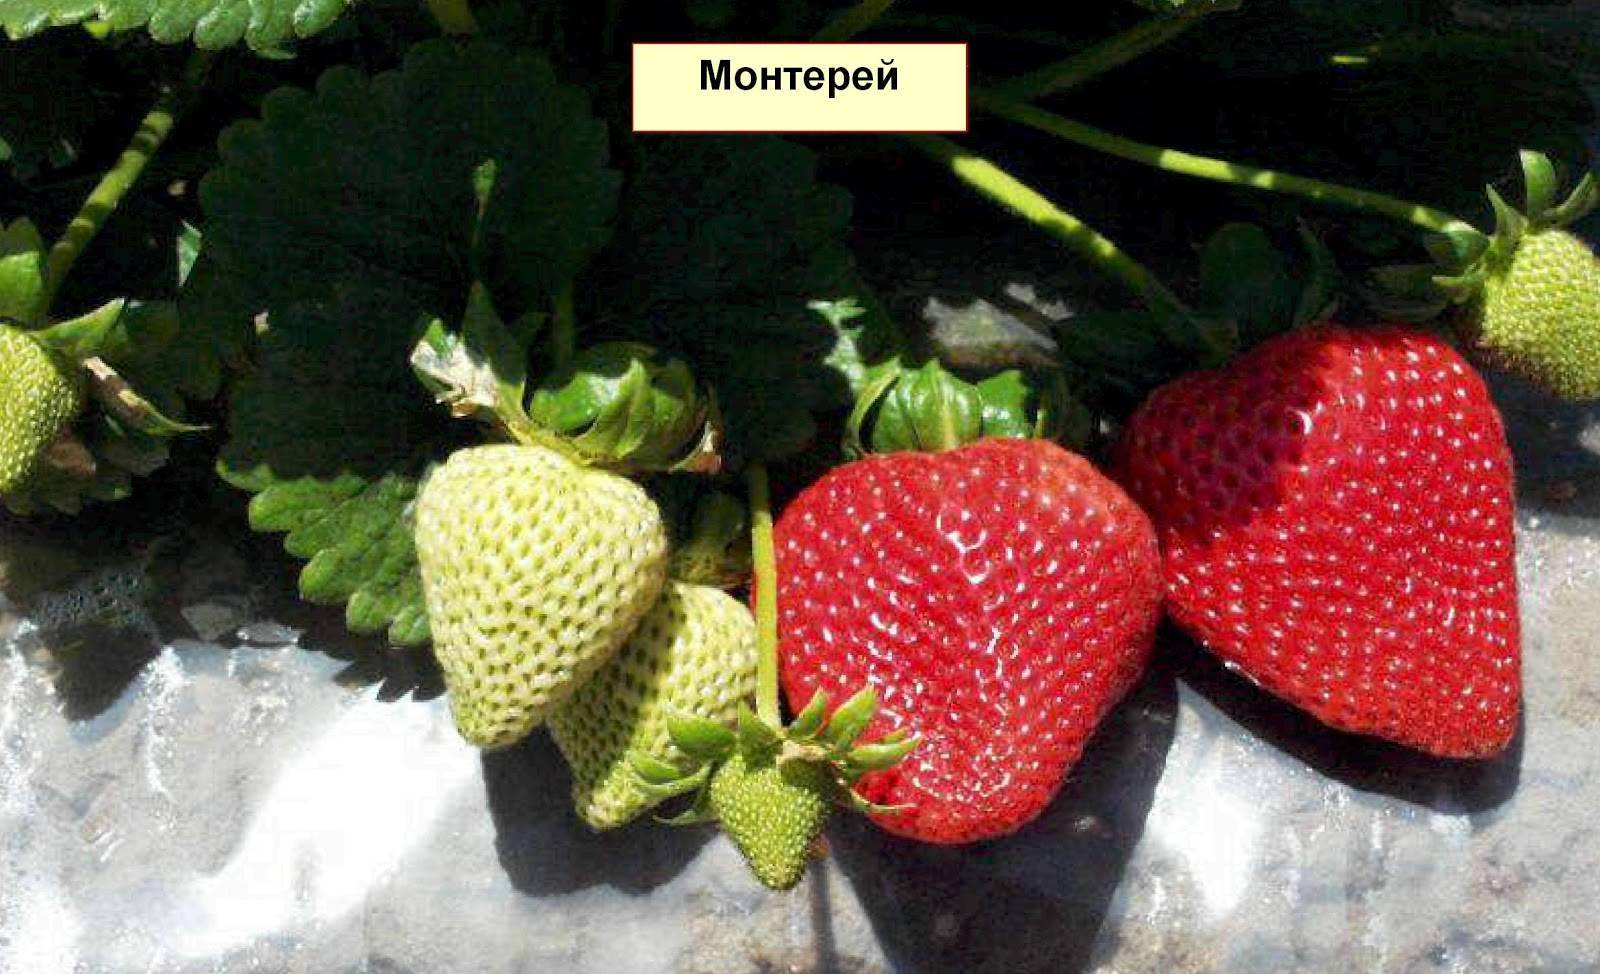 Клубника монтерей: описание ремонтантного сорта, видео отзыв садовода о выращивании с фото